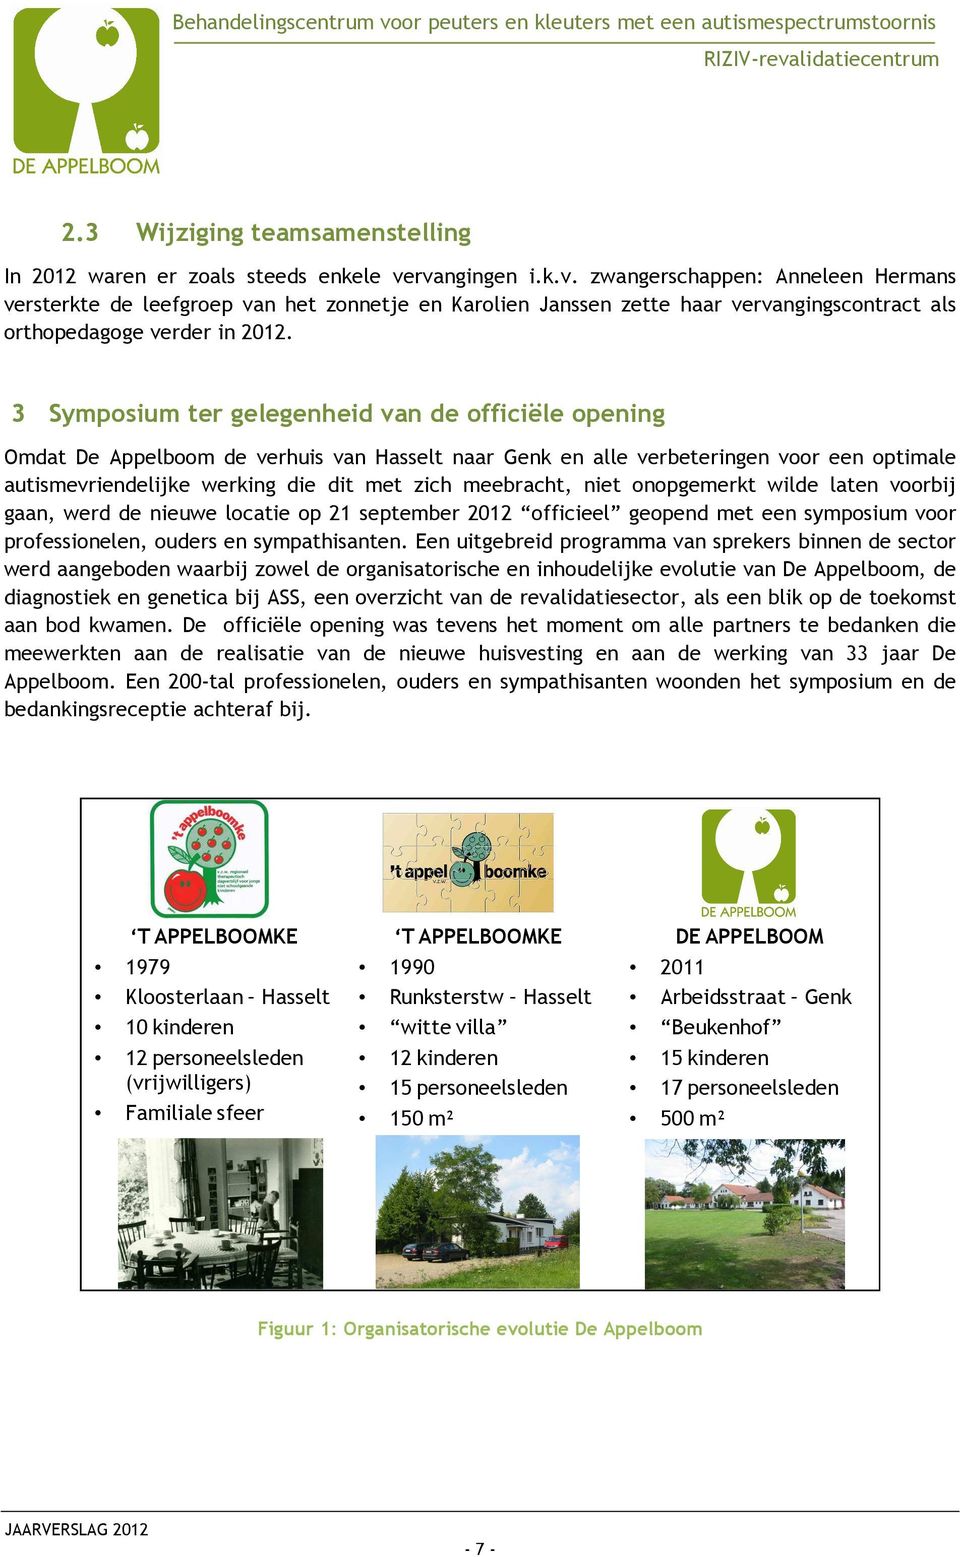 3 Symposium ter gelegenheid van de officiële opening Omdat De Appelboom de verhuis van Hasselt naar Genk en alle verbeteringen voor een optimale autismevriendelijke werking die dit met zich